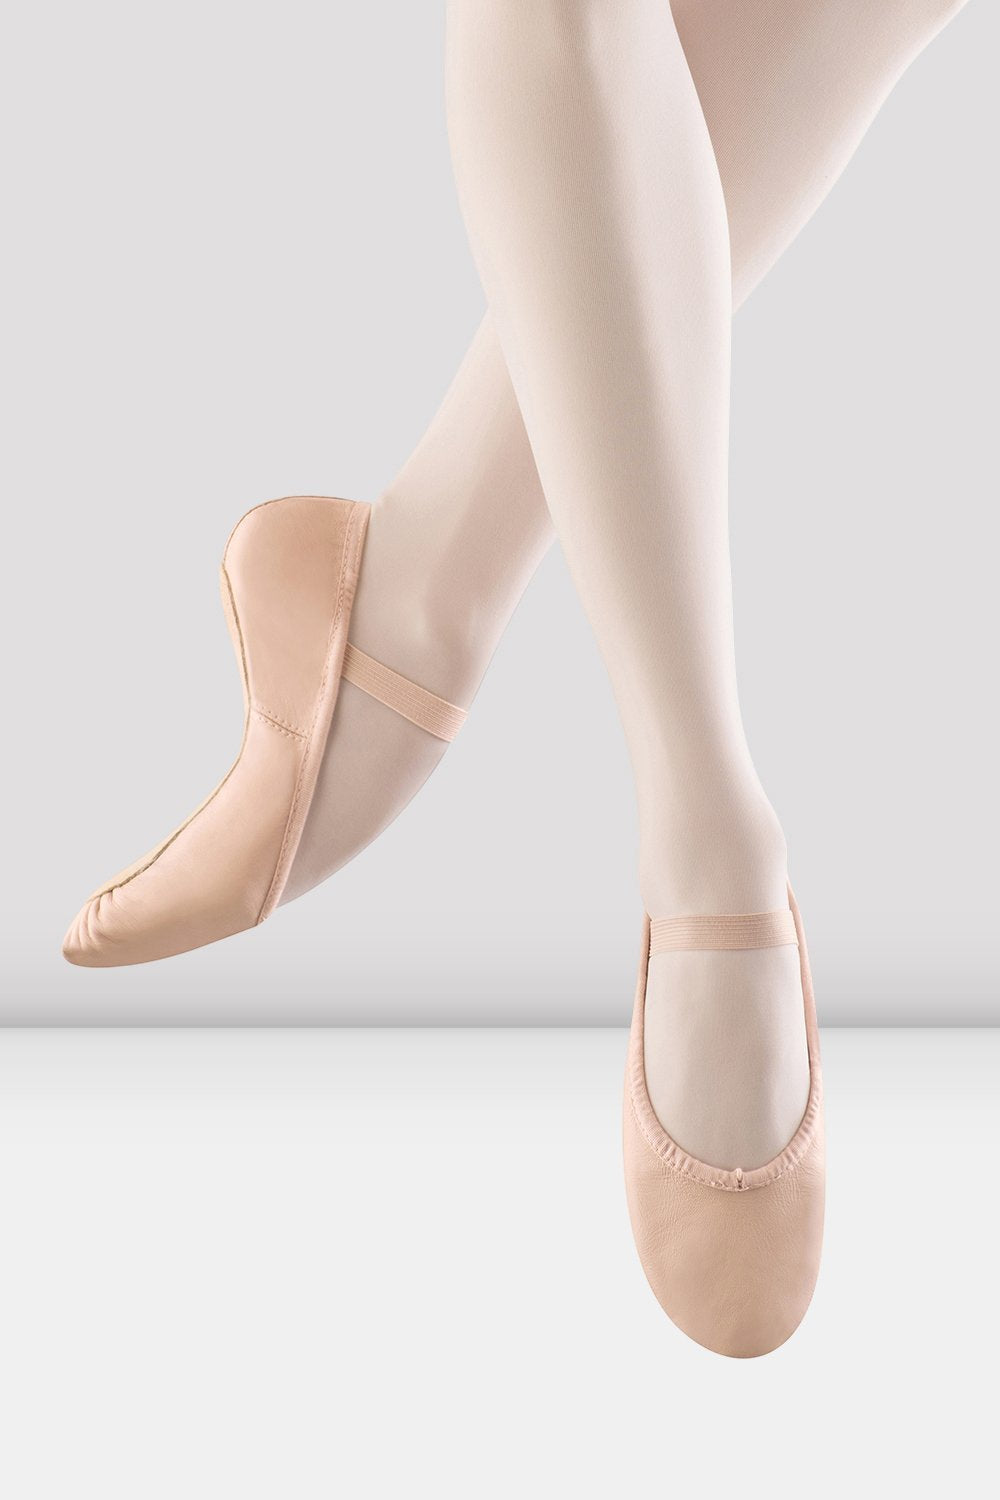 Bloch Women's Dansoft Full Sole Leather Ballet Shoes